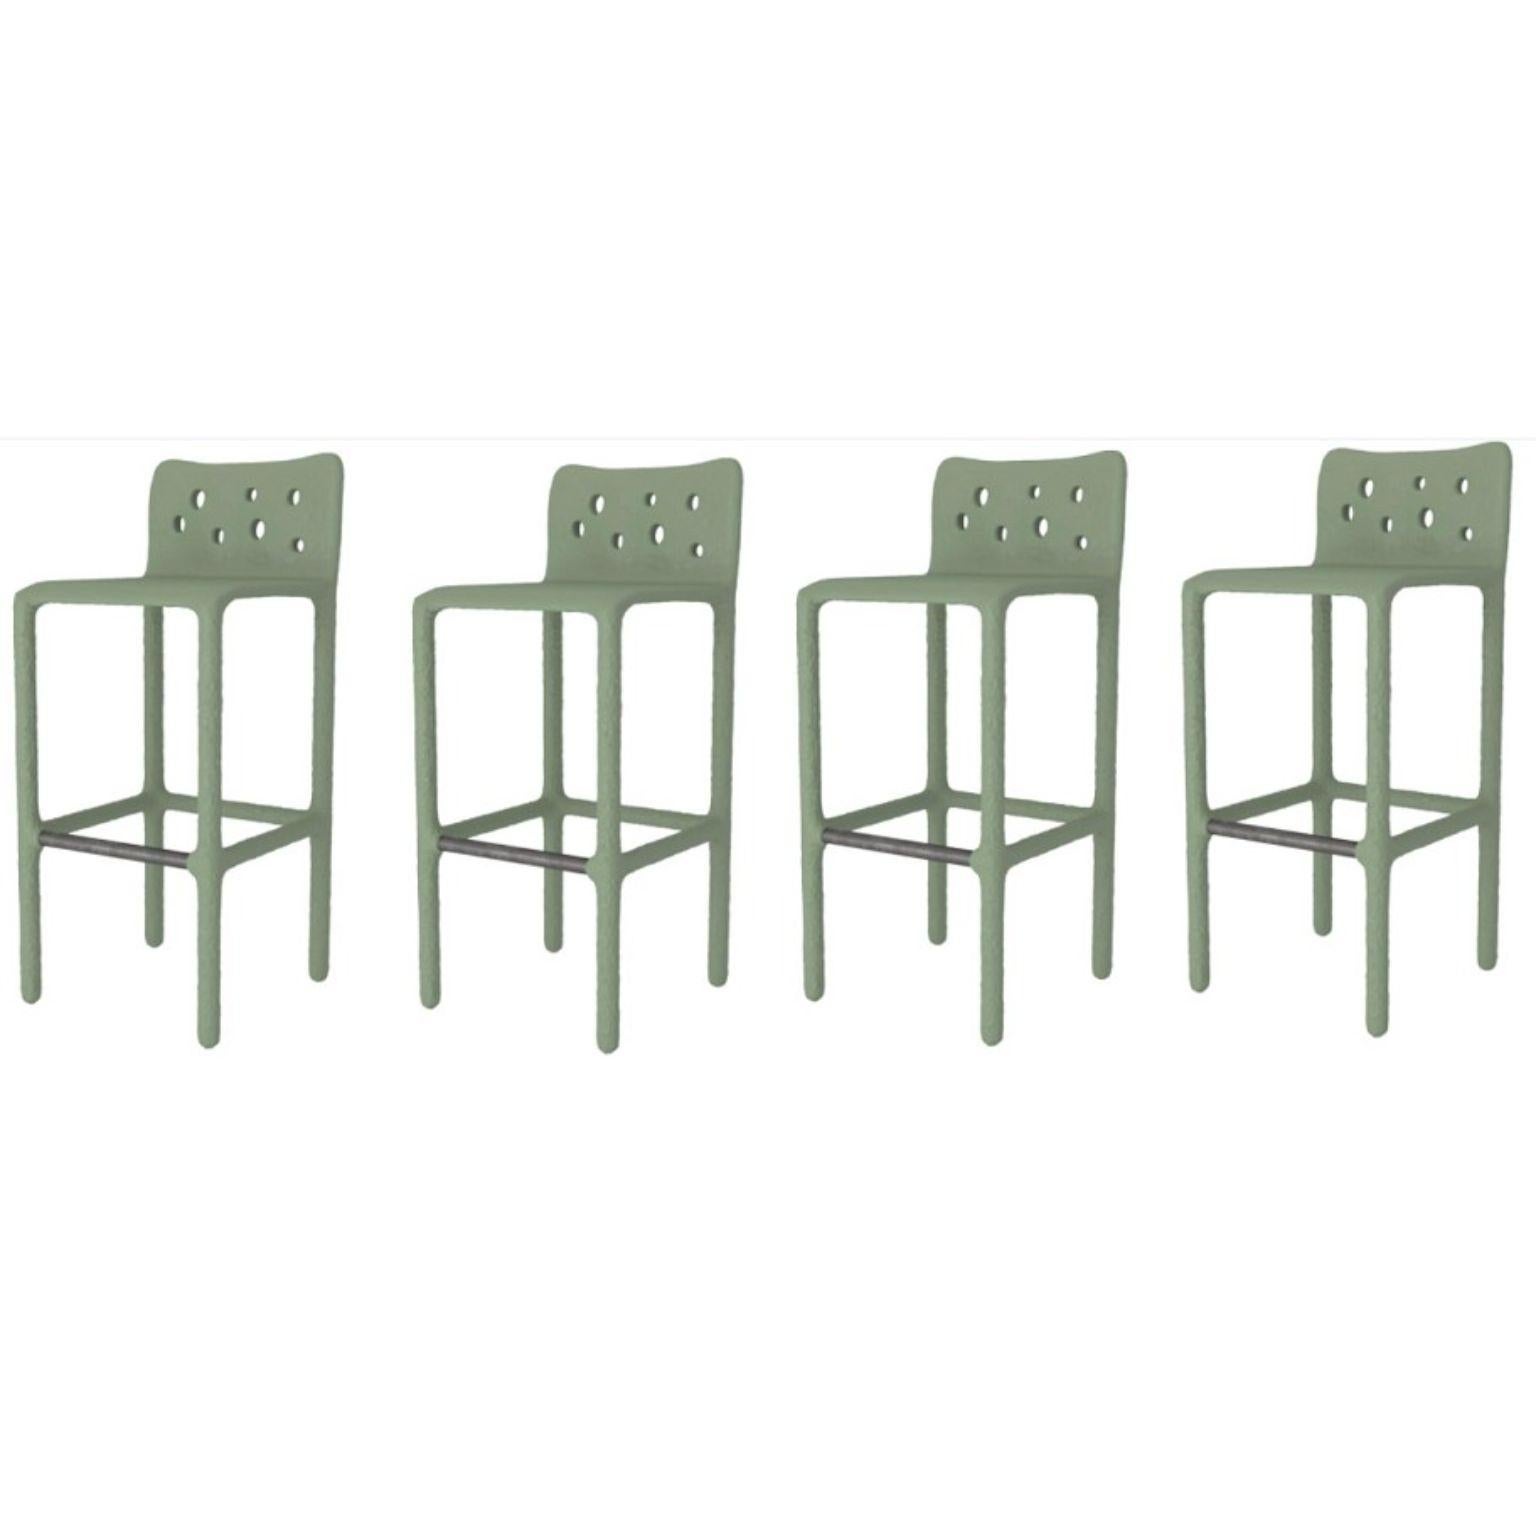 Ensemble de 4 chaises d'extérieur vertes sculptées de style contemporain par Faina.
Design : Victoriya Yakusha.
MATERIAL : acier, caoutchouc de lin, biopolymère, cellulose.
Dimensions : hauteur : 106 x largeur : 45 x largeur de la place assise : 49